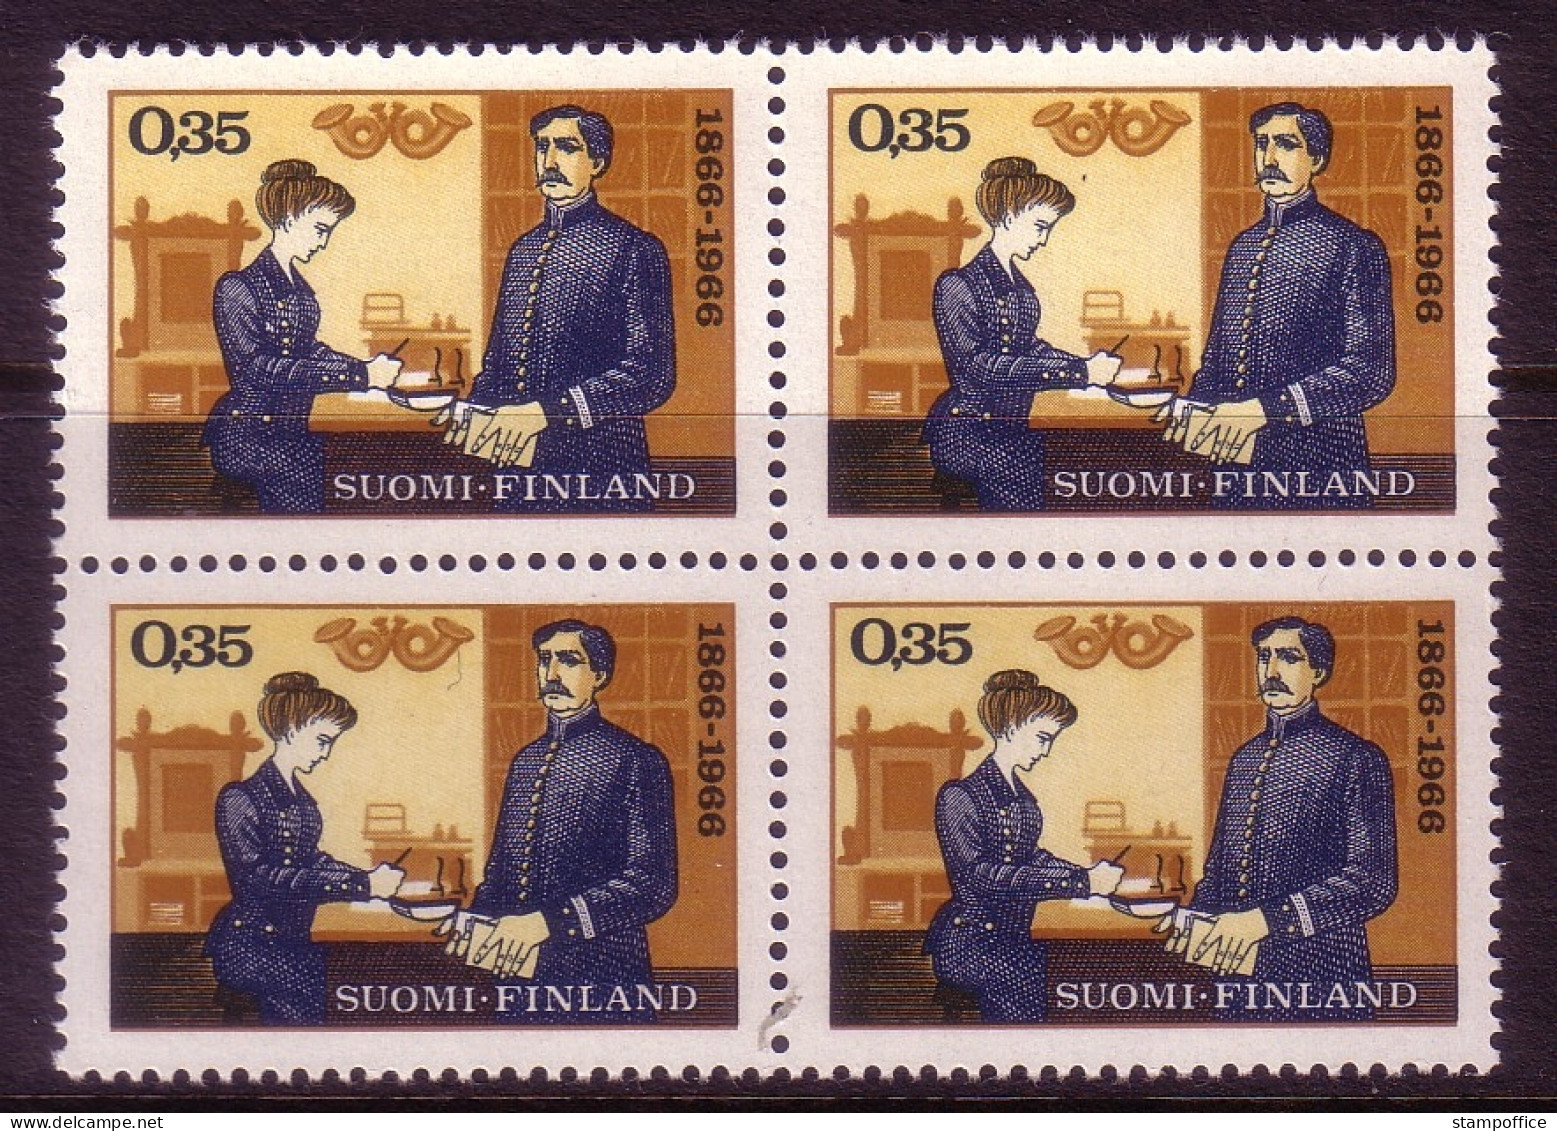 FINNLAND MI-NR. 613 POSTFRISCH(MINT) 4er BLOCK NORDIA '66 ALTE POSTSTELLE - Unused Stamps